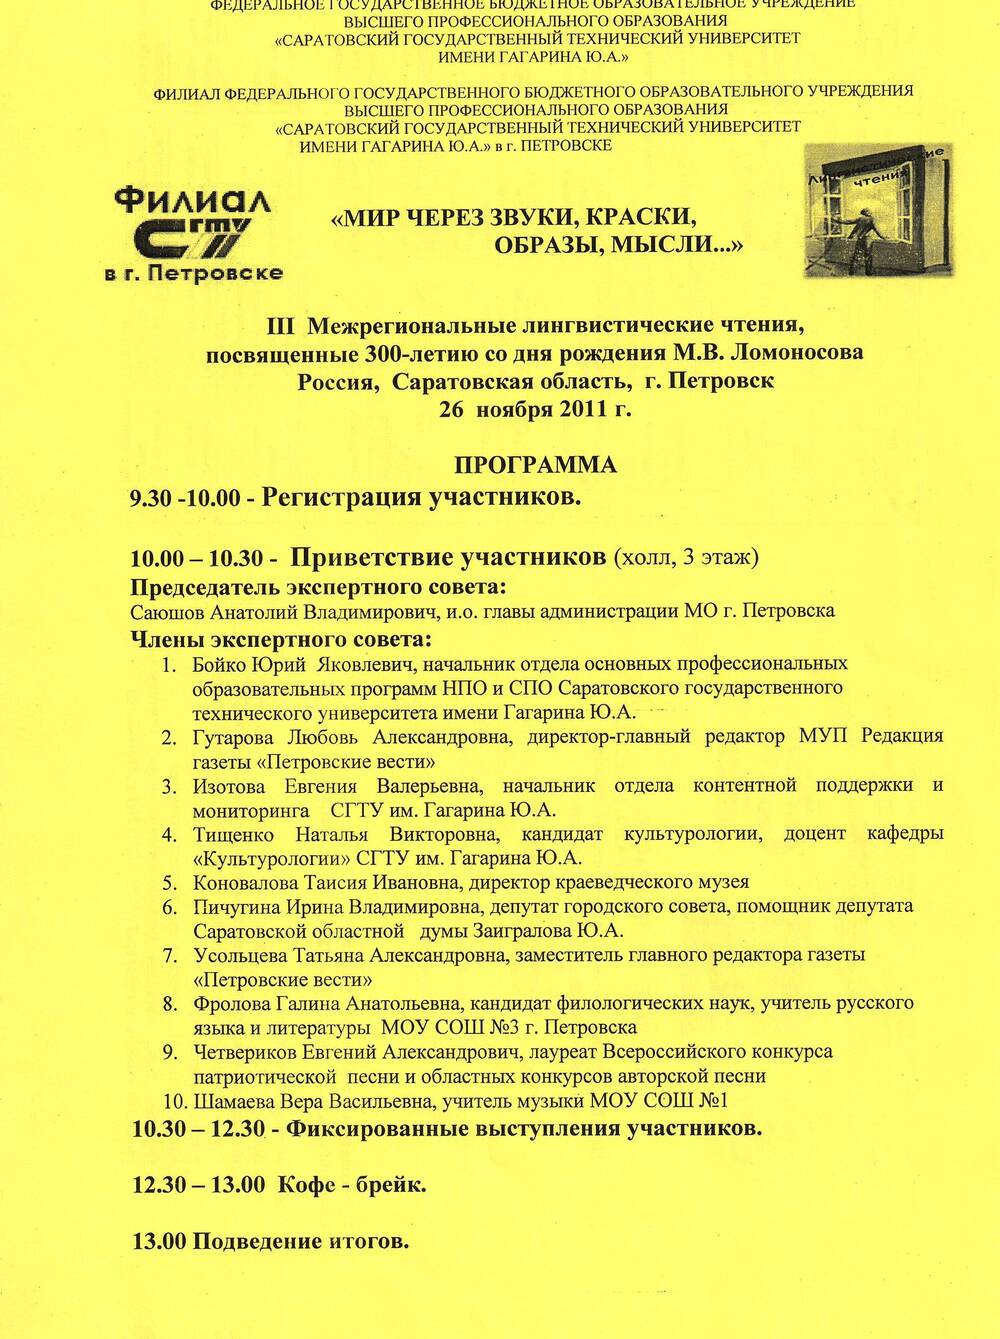 Программа мероприятия филиала СГТУ им. Гагарина Ю.А. от 26.11.2011г.